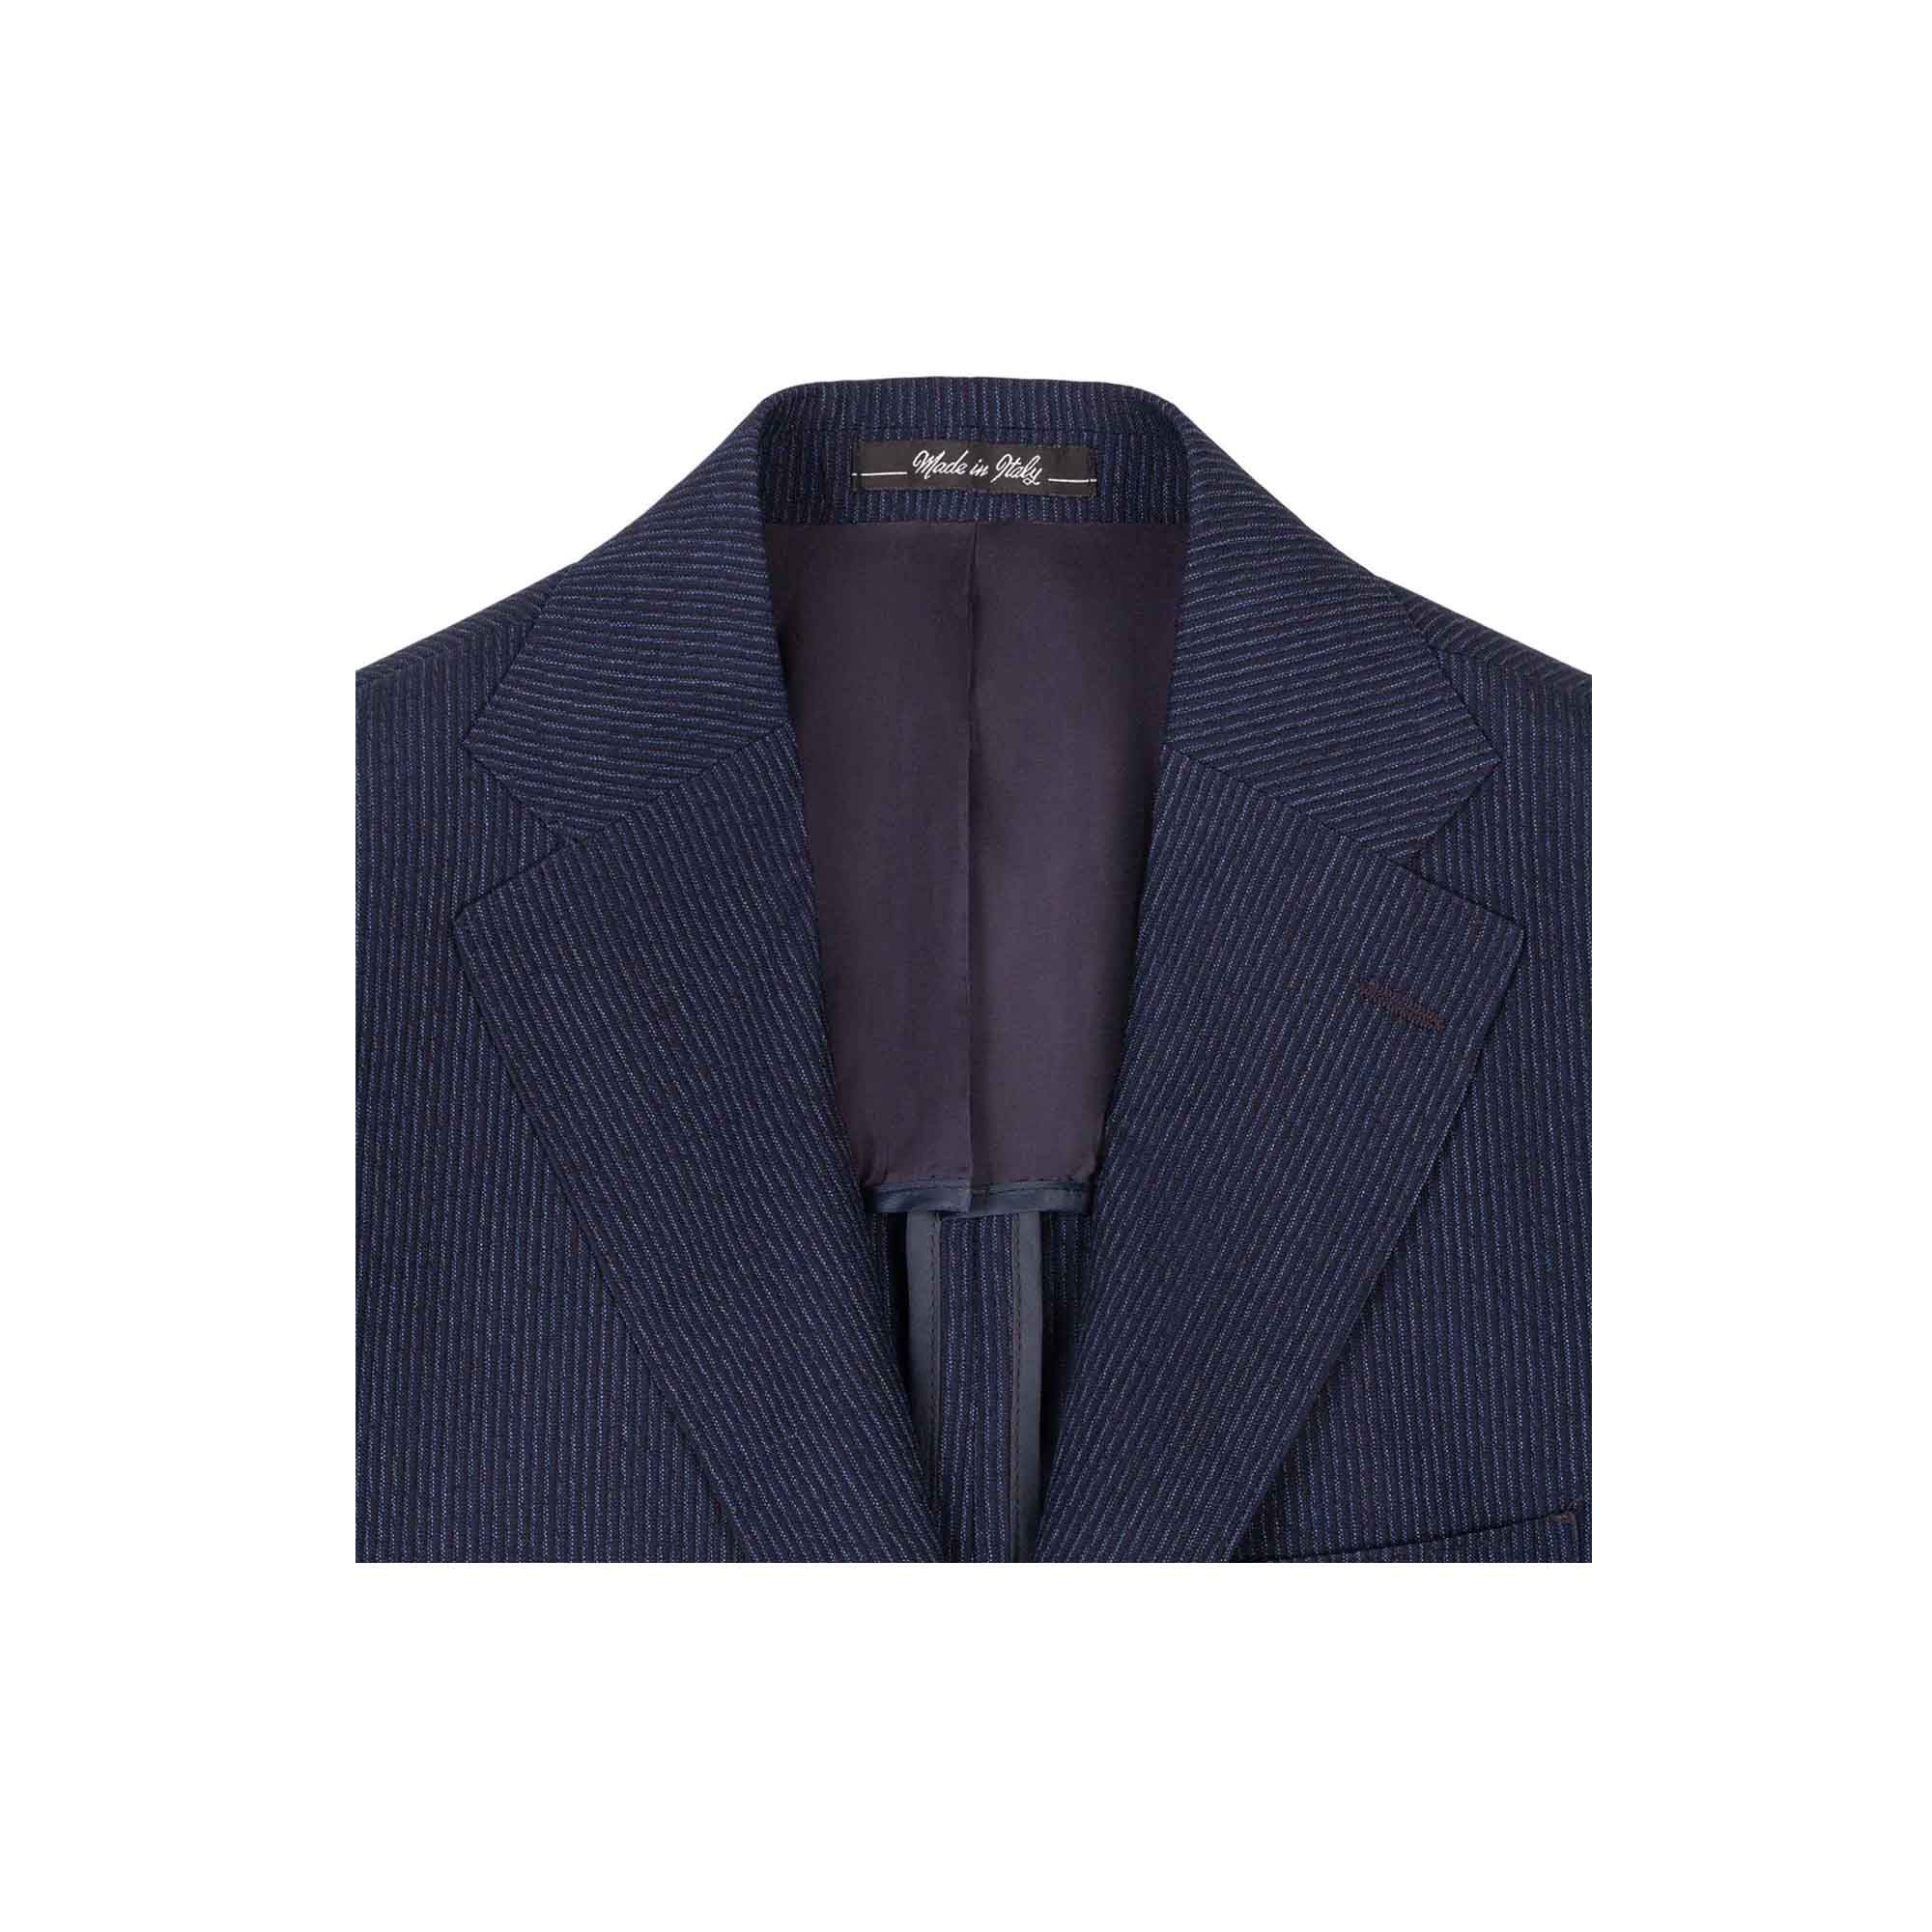 Men's Pinstripe Blue Wool Suit